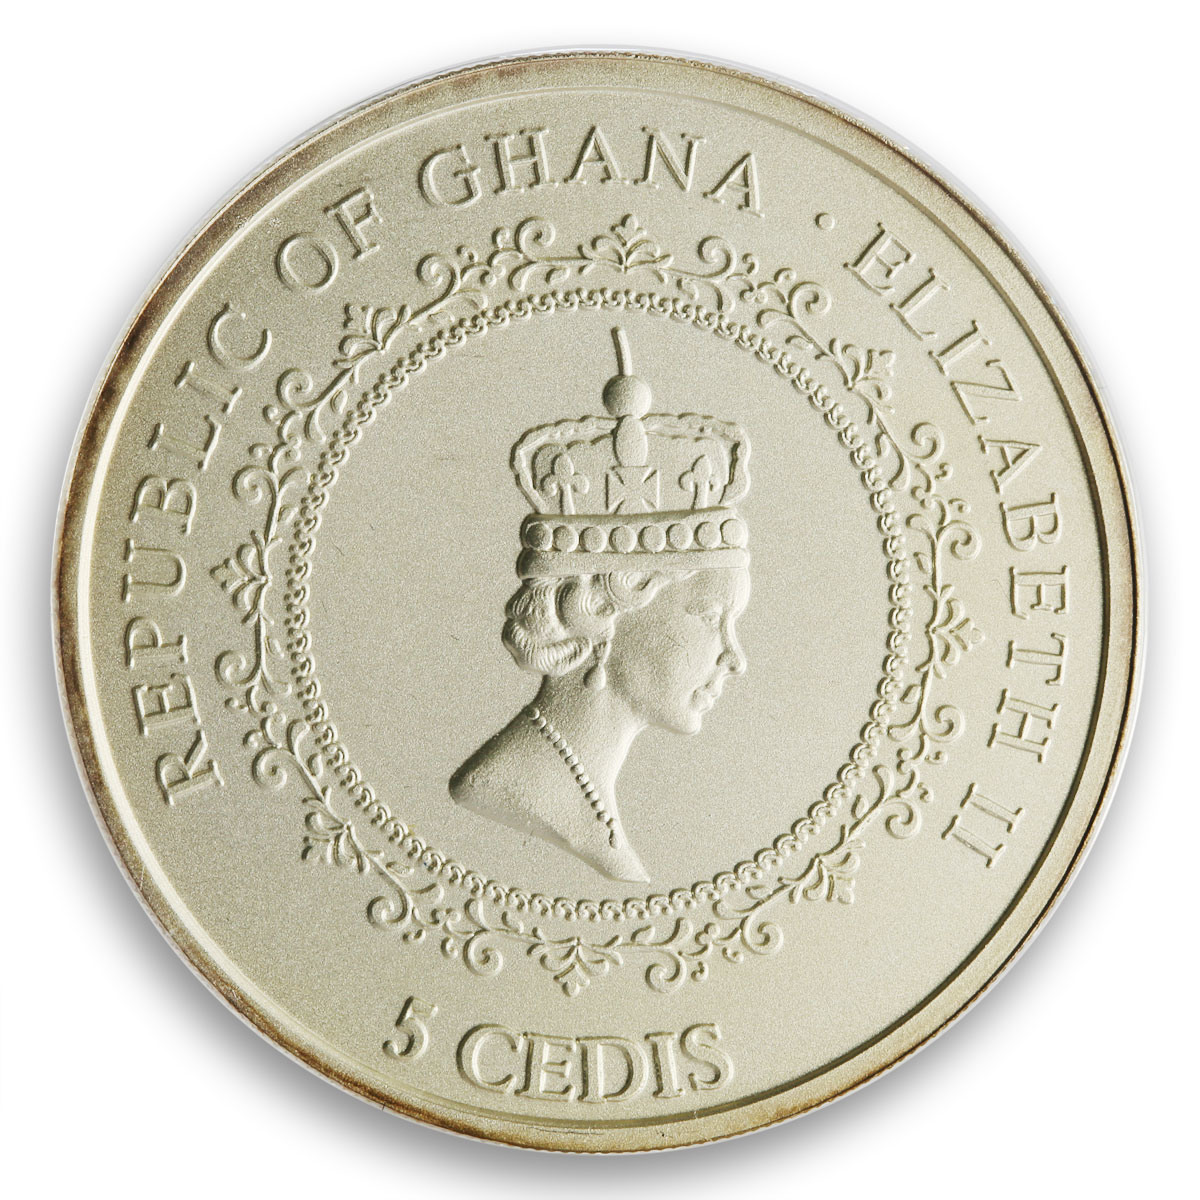 Ghana 5 cedis Rheingold colored silver coin 2019